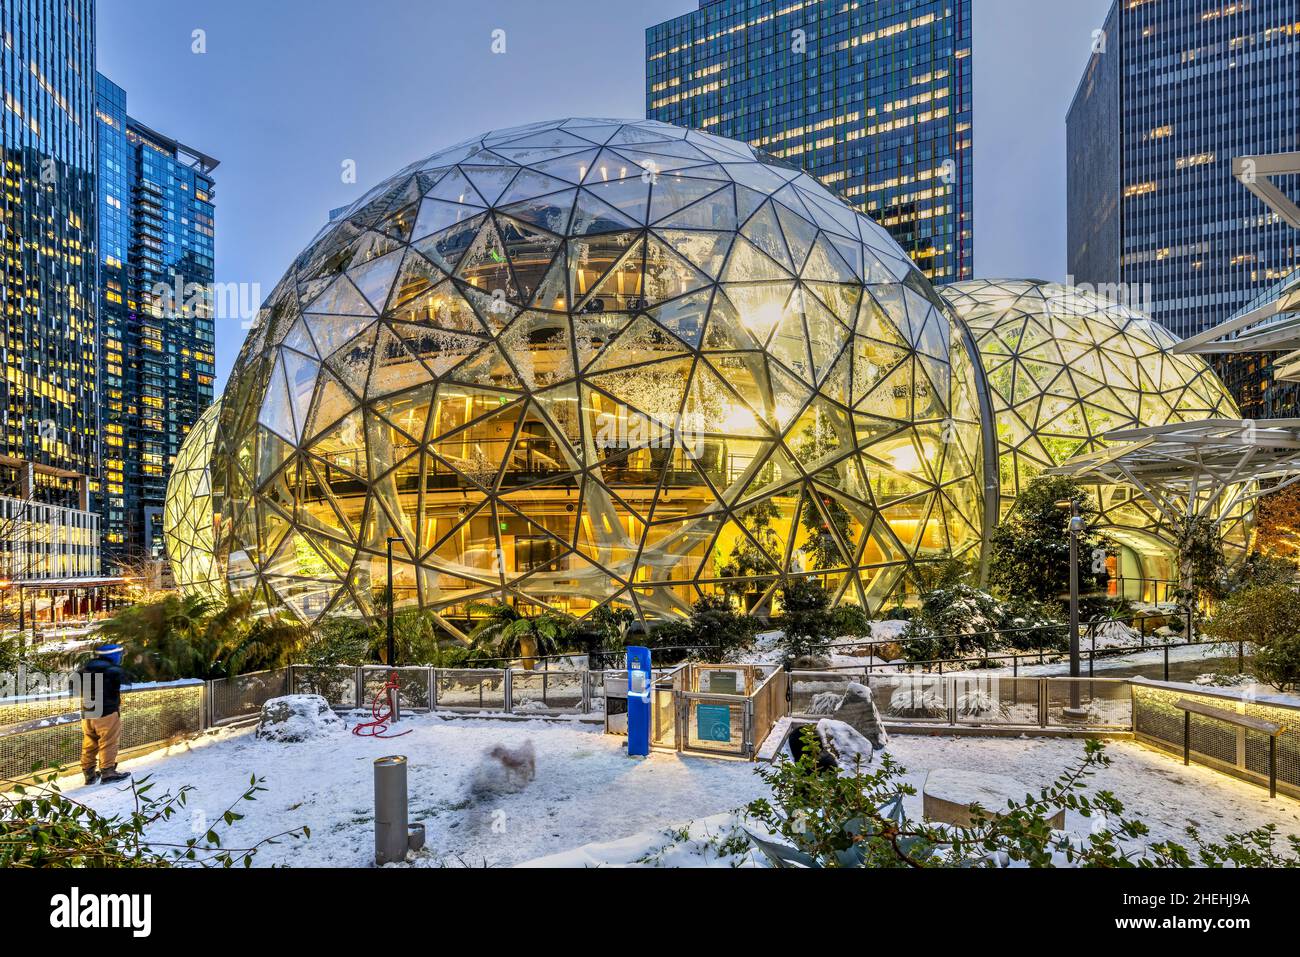 Amazon Spheres at Amazon headquarters campus, Seattle, Washington, USA Stock Photo